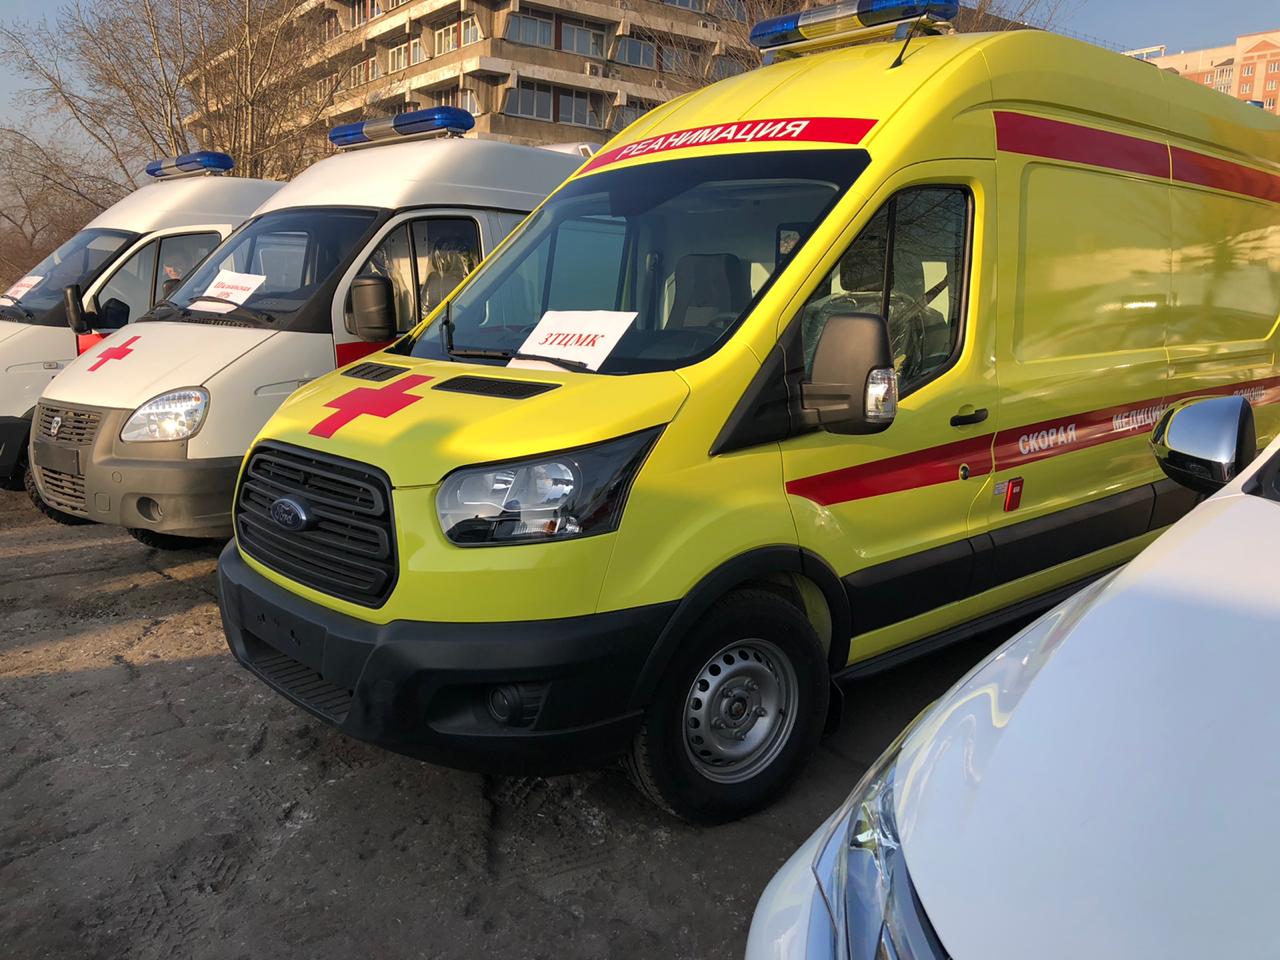 42 новых автомобиля скорой помощи получили забайкальские медучреждения